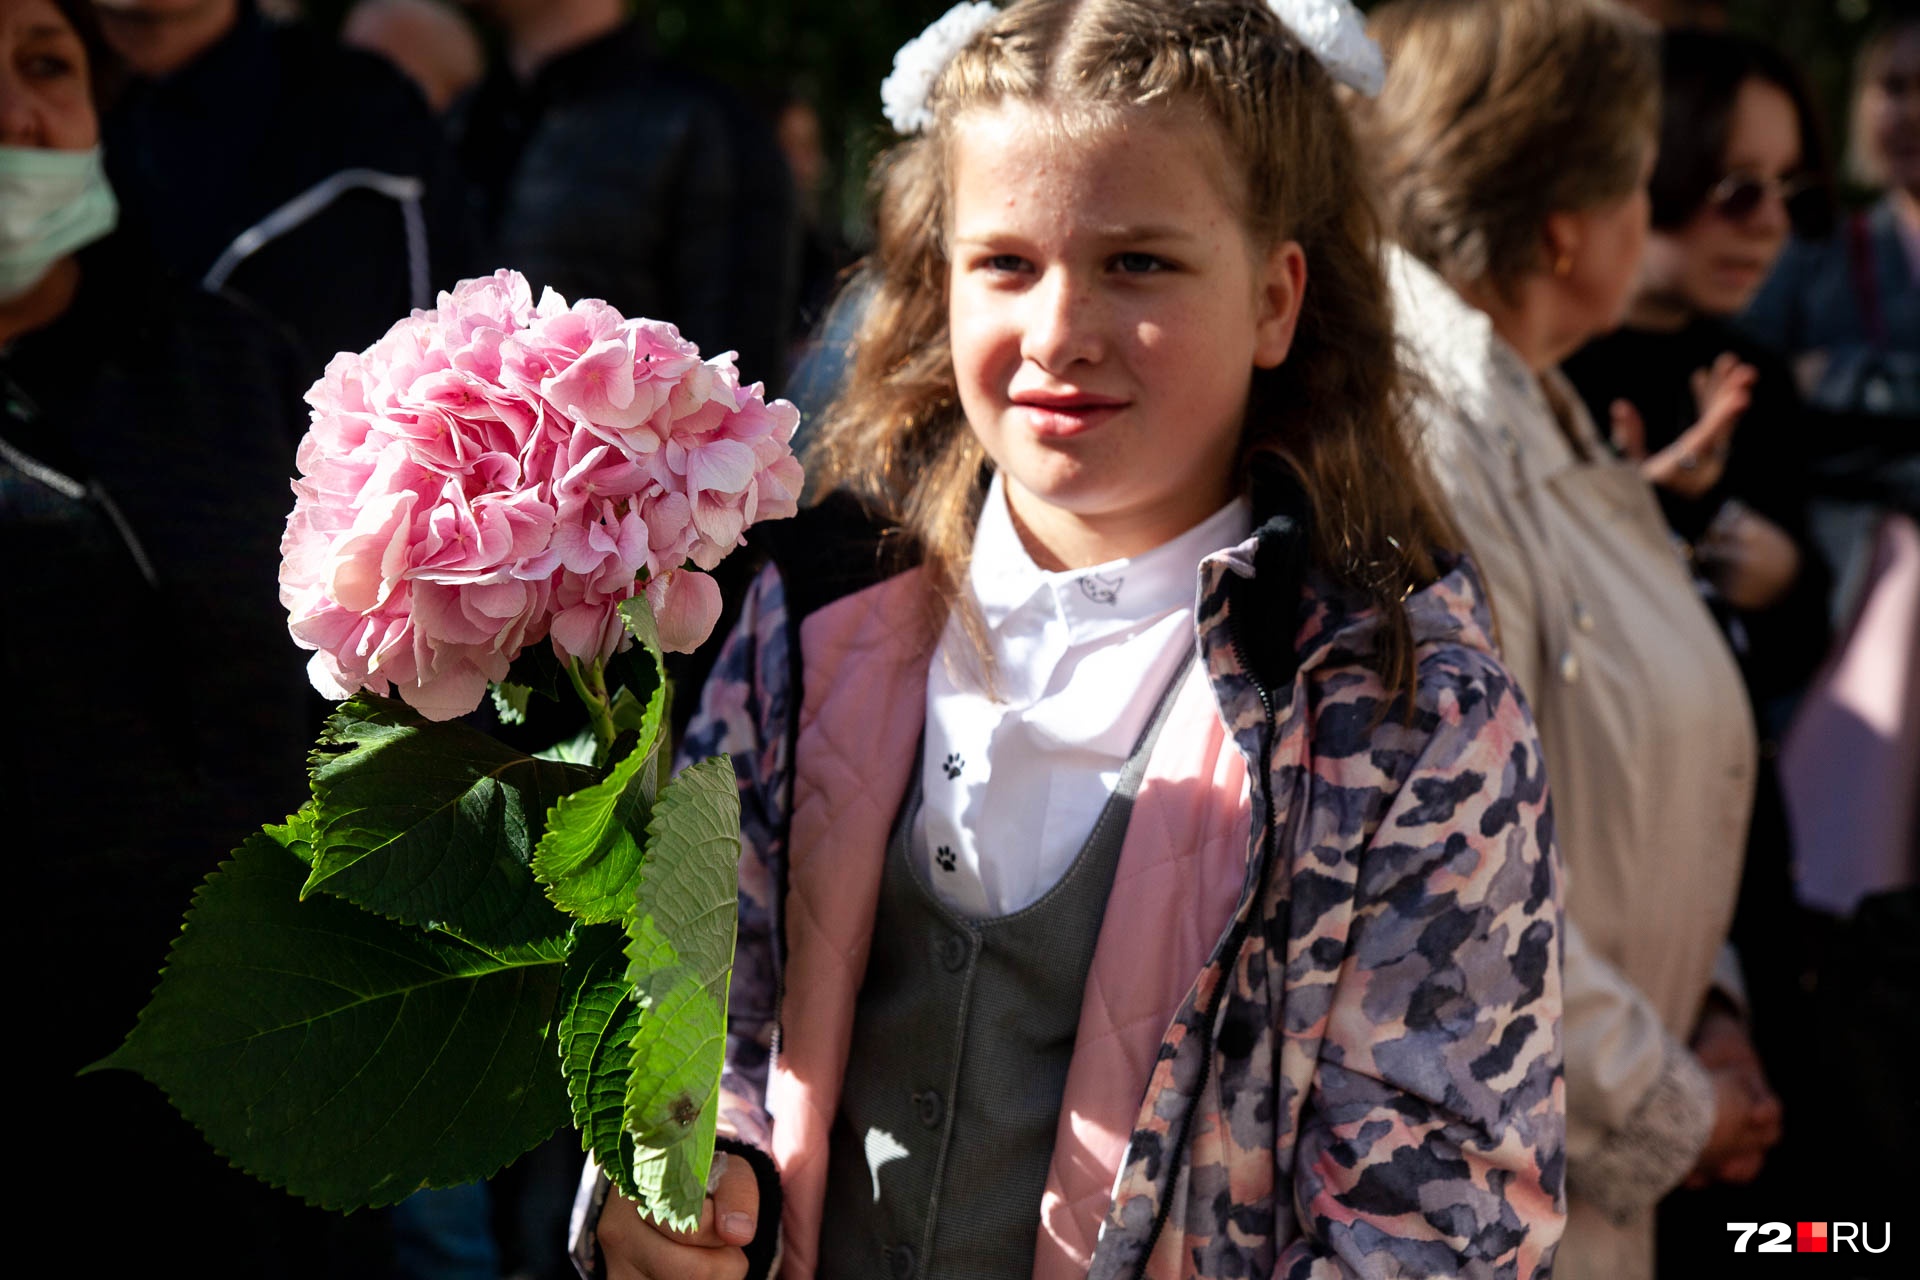 Третьеклассница Маша пришла на линейку одна. Говорит, выбрала этот цветок, потому что он очень красивый и заменяет целый букет. Это гортензия